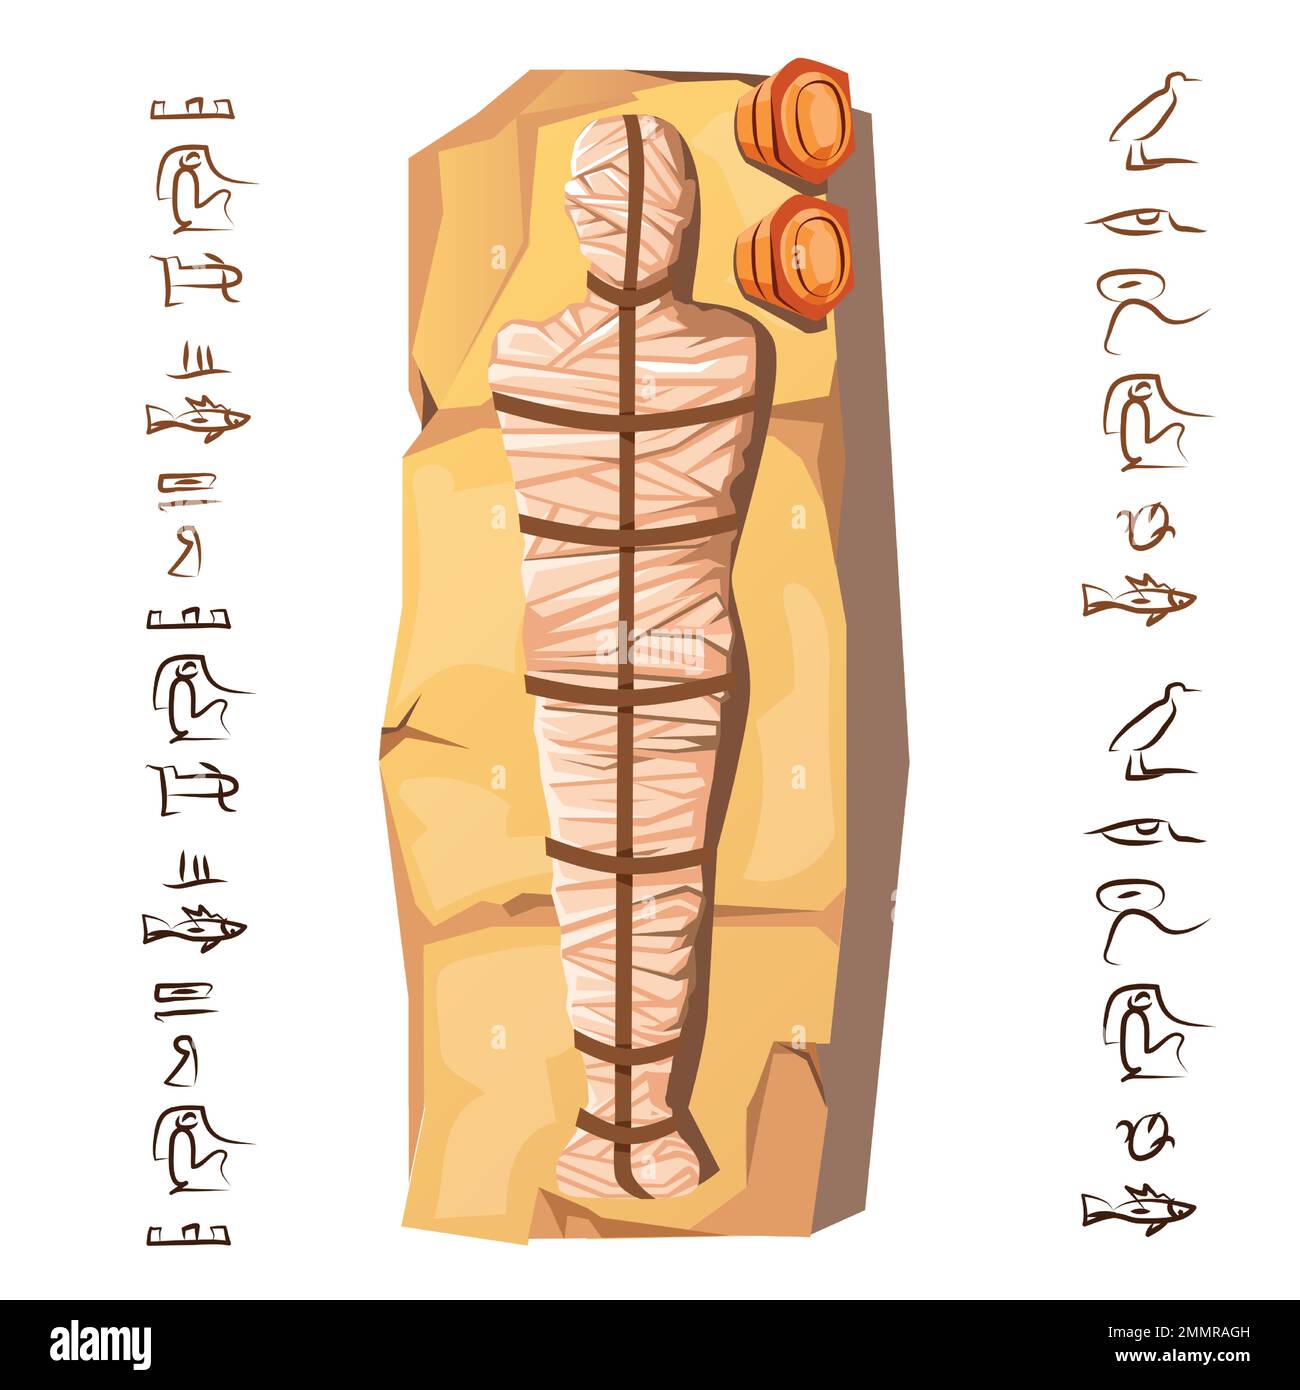 Mummy Creation Cartoon-Vektordarstellung. Mumifizierungsprozess, Einbalsamierung von Toten, menschliche Leiche ist mit Leinen umhüllt, liegt auf Stein, neben Hieroglyphen Kult von Toten aus dem alten Ägypten Stock Vektor